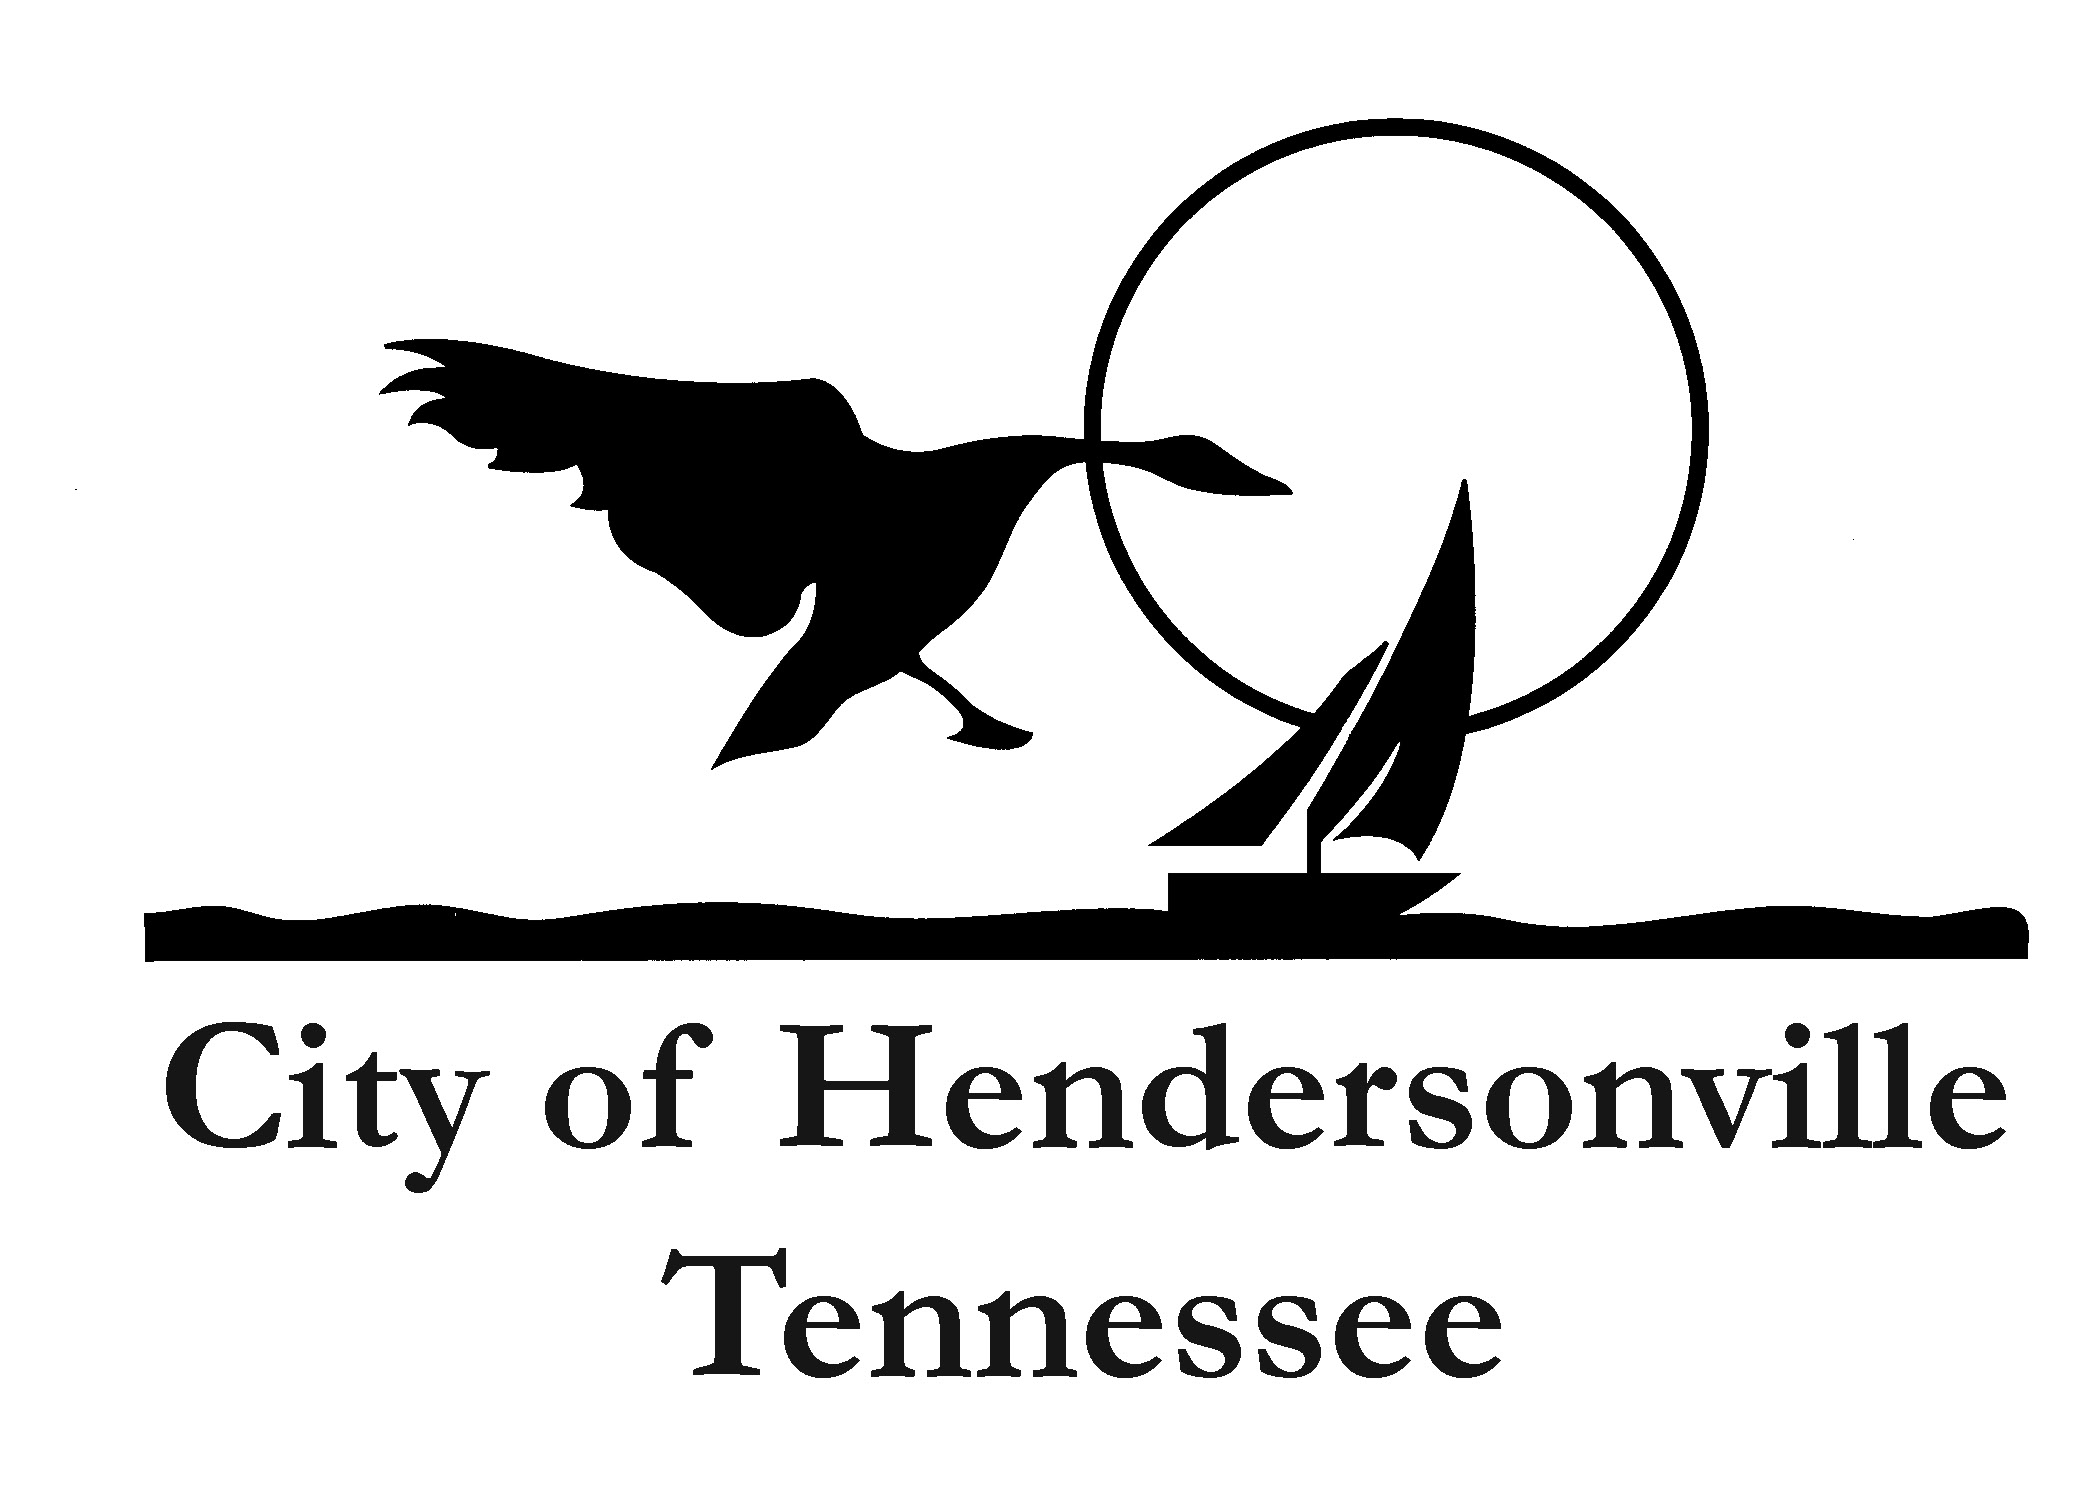 City of Hendersonville